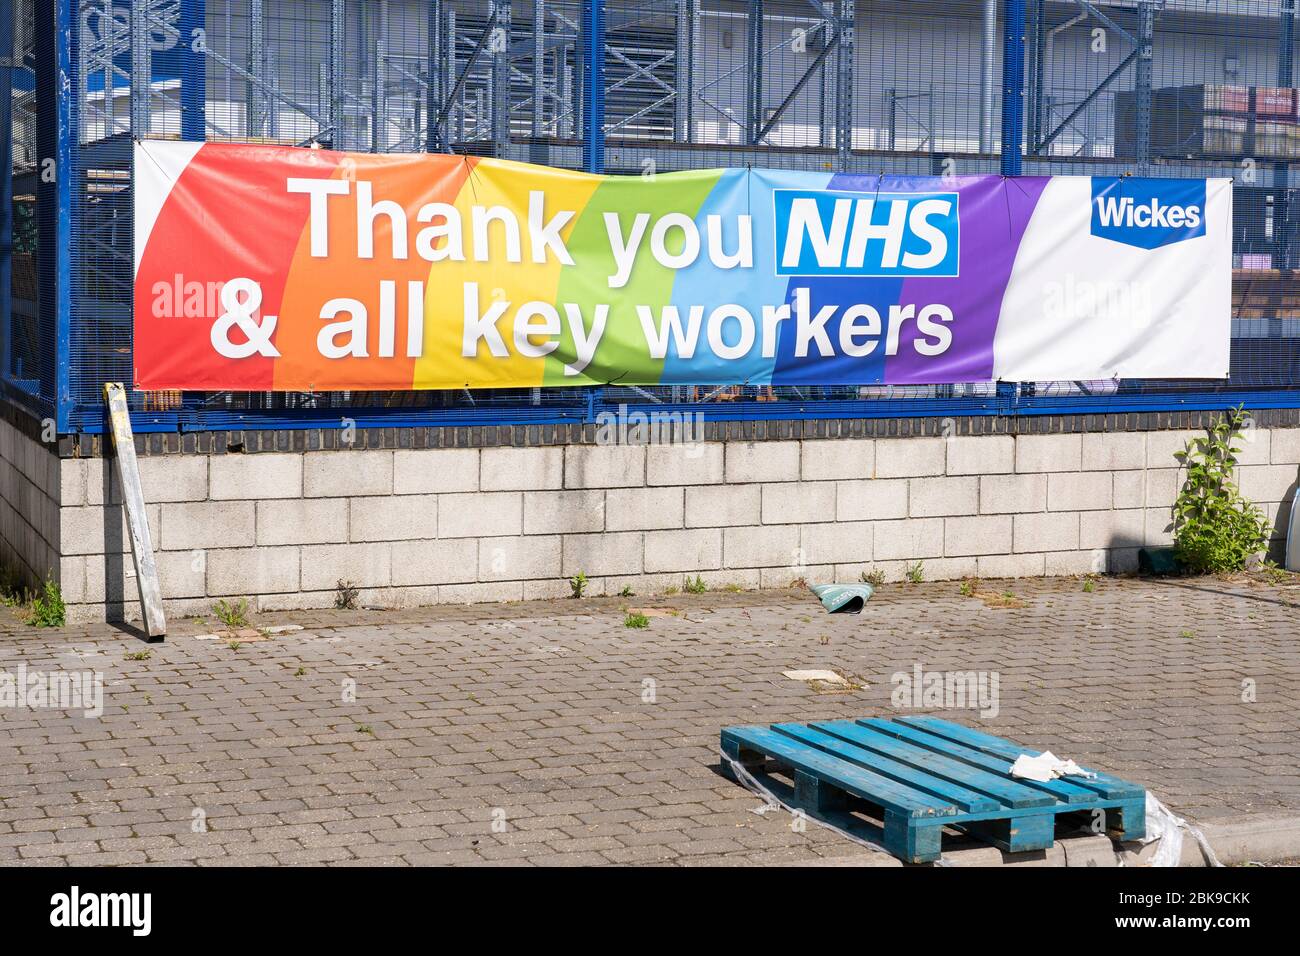 Un banner presso il fornitore di materiali da costruzione fai da te di Wickes, ringraziando l'NHS e tutti i principali lavoratori durante la pandemia Coronavirus Covid-19, Basingstoke, Regno Unito Foto Stock